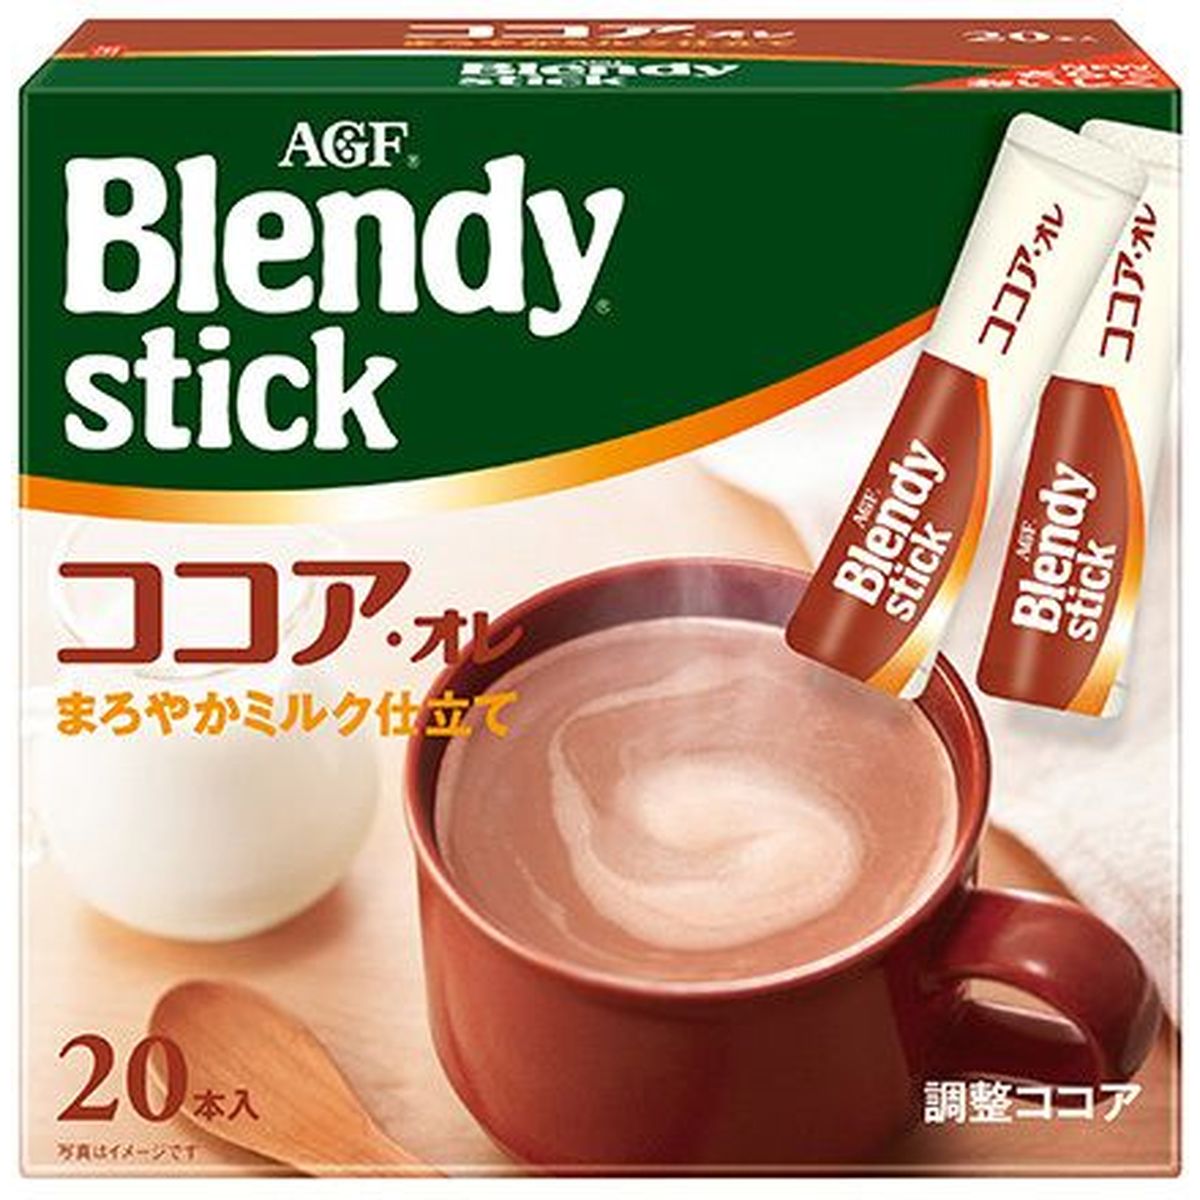 【3個入リ】AGF ブレンディ スティック ココアオレ 20本